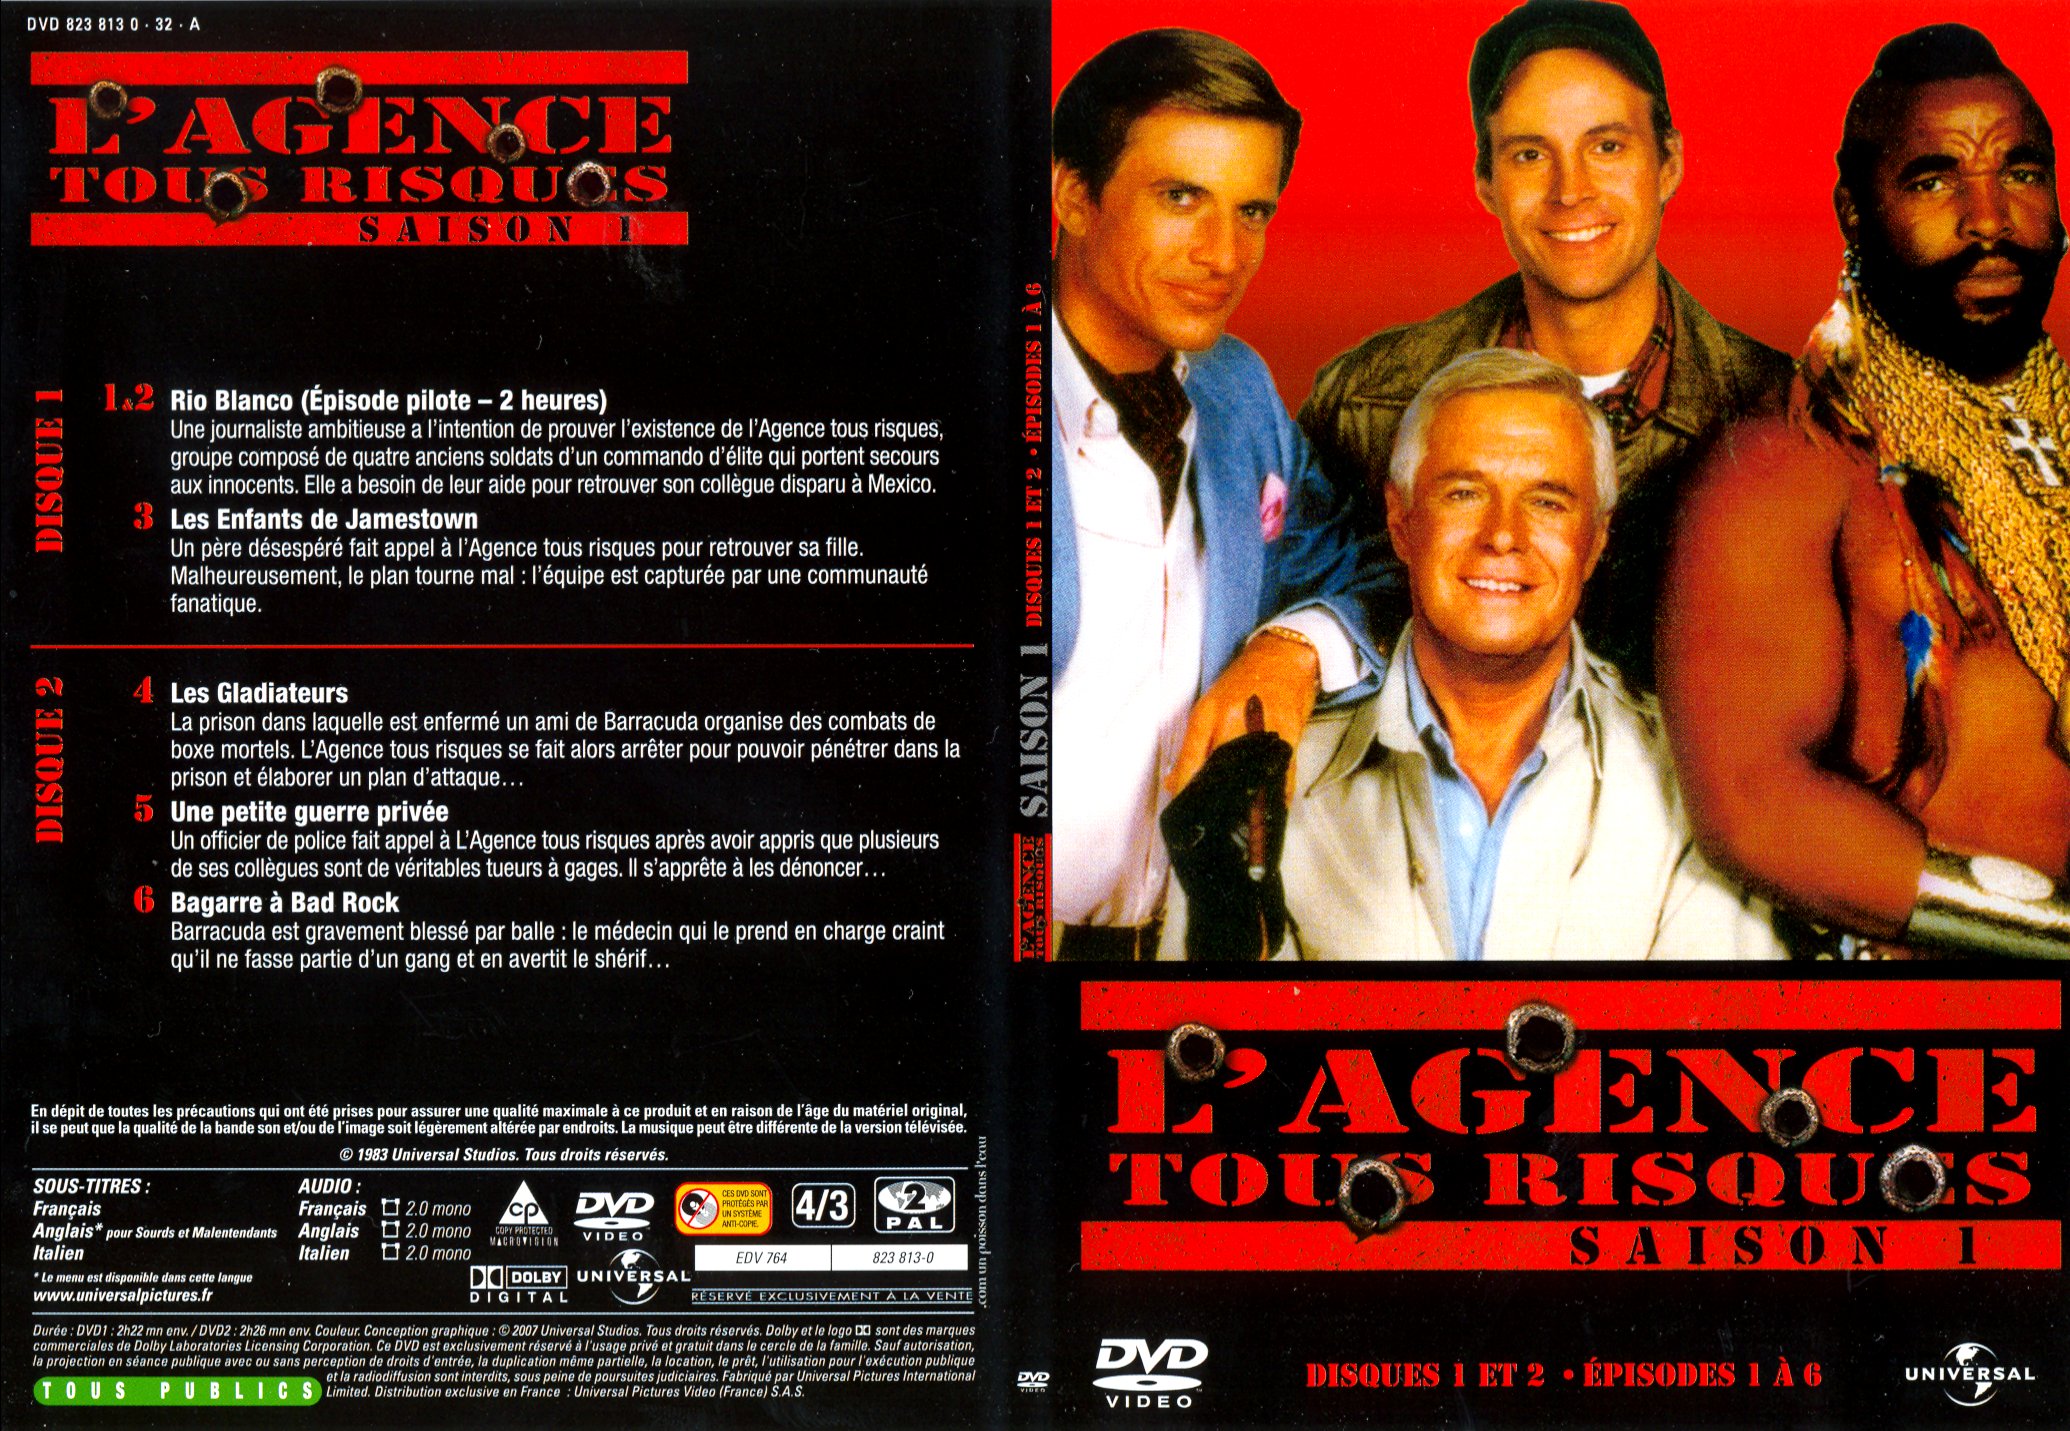 Jaquette DVD de Lagence tous risques saison 1 DVD 1 - Cin��ma Passion